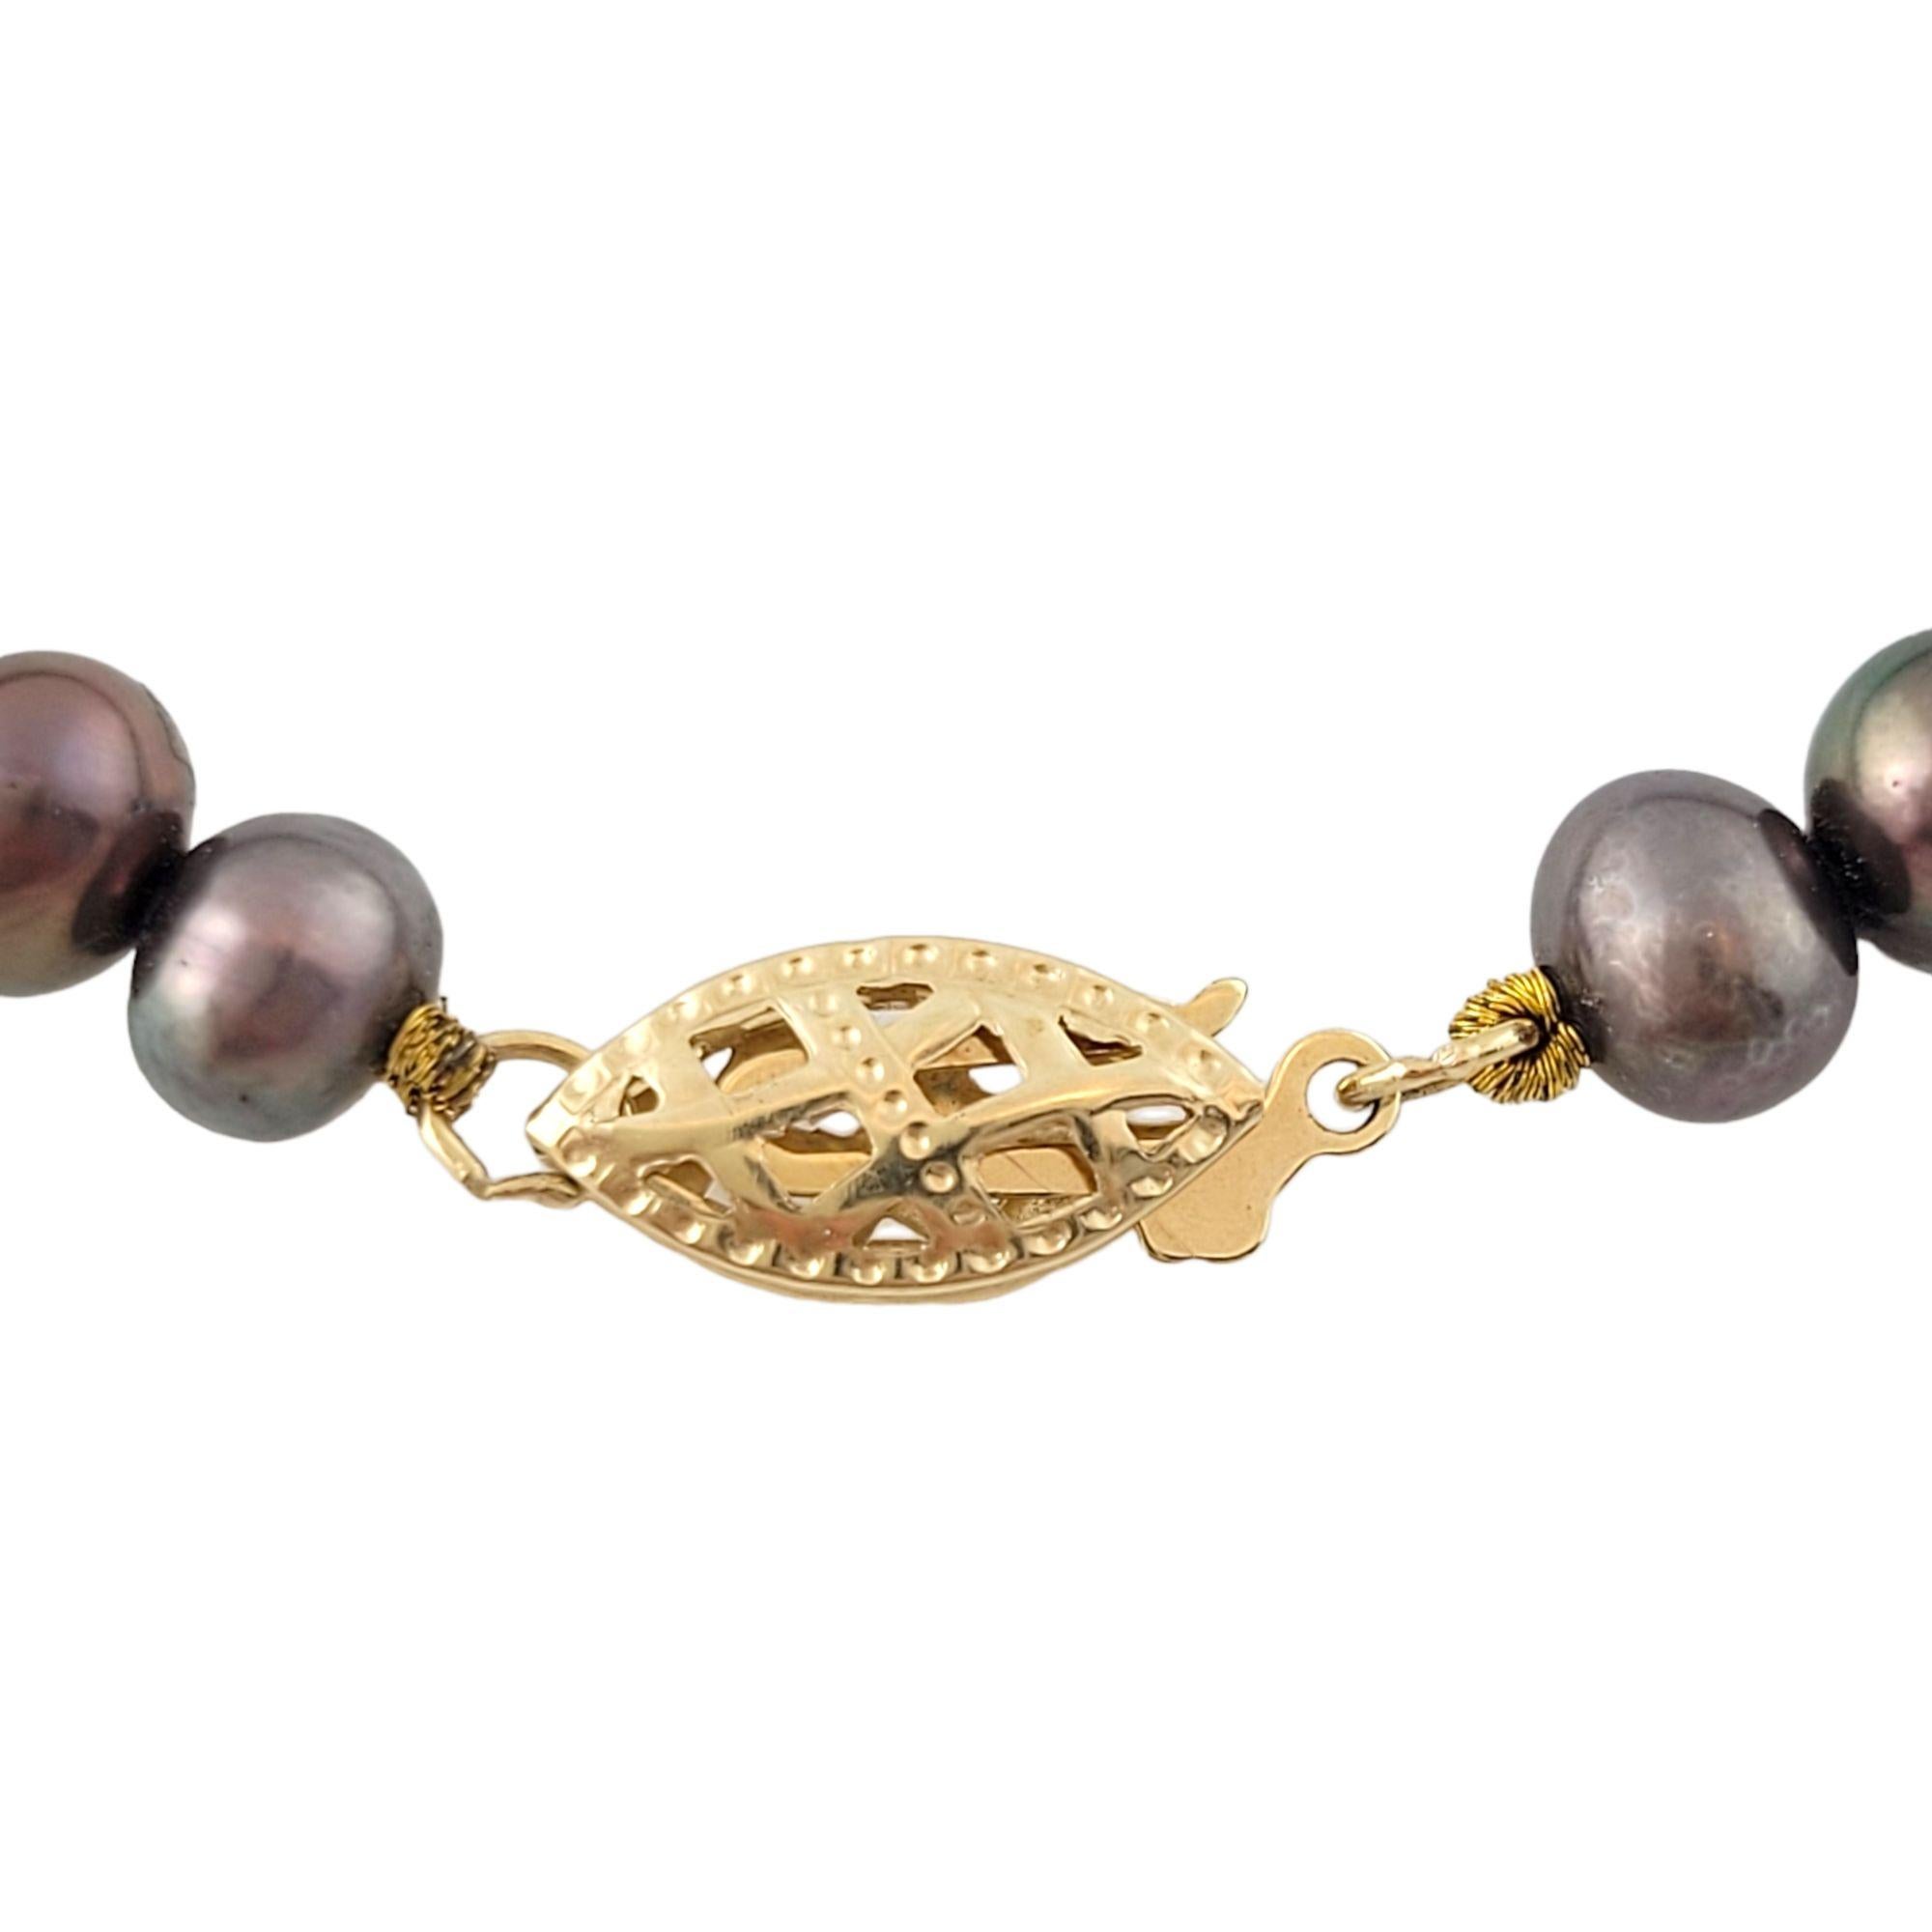 Magnifique bracelet en perles d'eau douce avec fermoir en or jaune 14K !

(38 perles)

Taille des perles : environ 5,5 mm chacune

Le bracelet s'adapte à un poignet d'une taille maximale de 7,25 pouces.

Poids : 7,5 g/ 4,8 dwt

Poinçon : 14K

Très